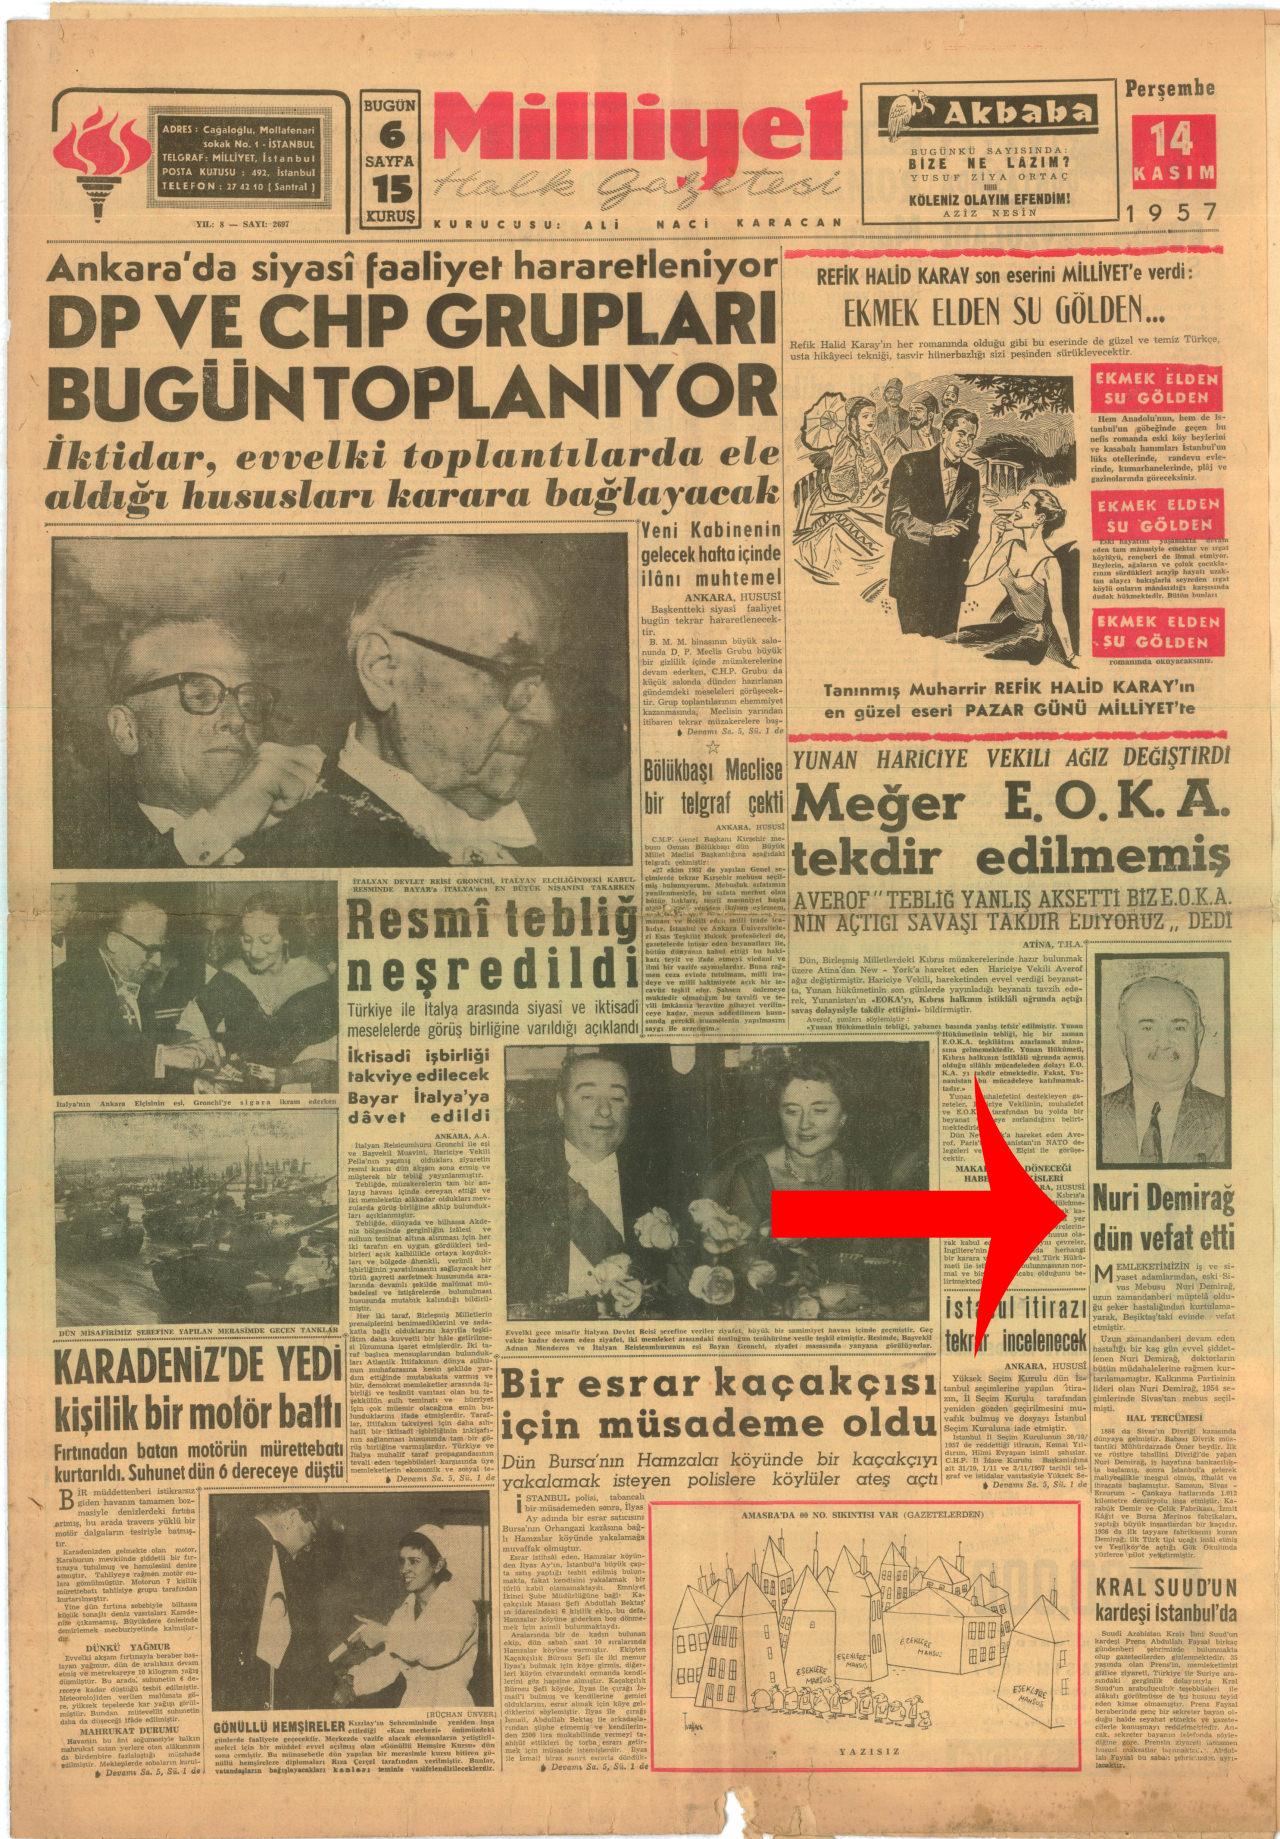 Milliyet gazetesinin 14 Kasım 1957 tarihli sayısı "Nuri Demirağ dün vefat etti"